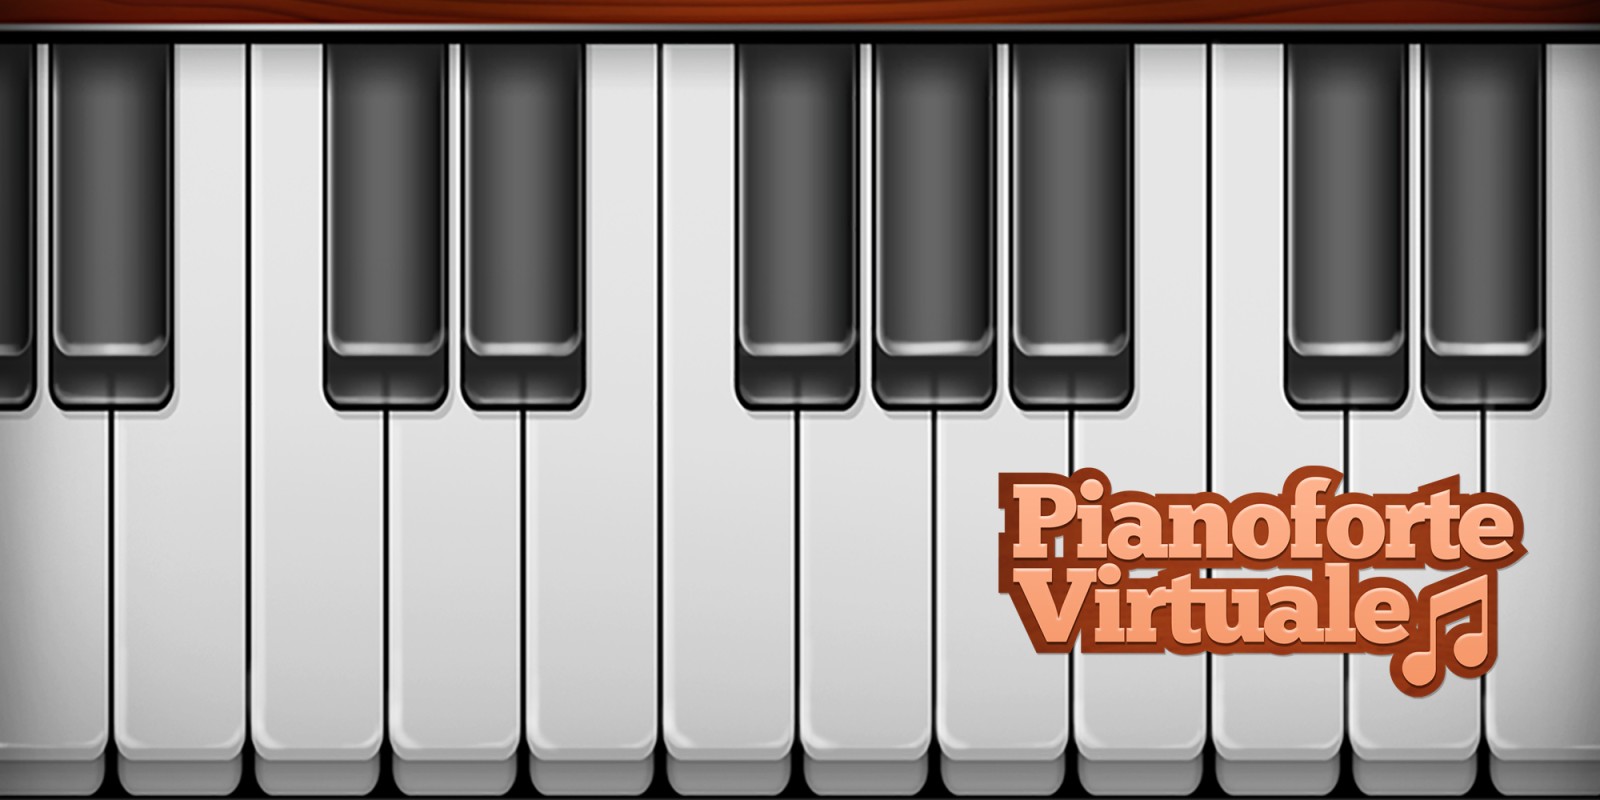 Pianoforte Virtuale